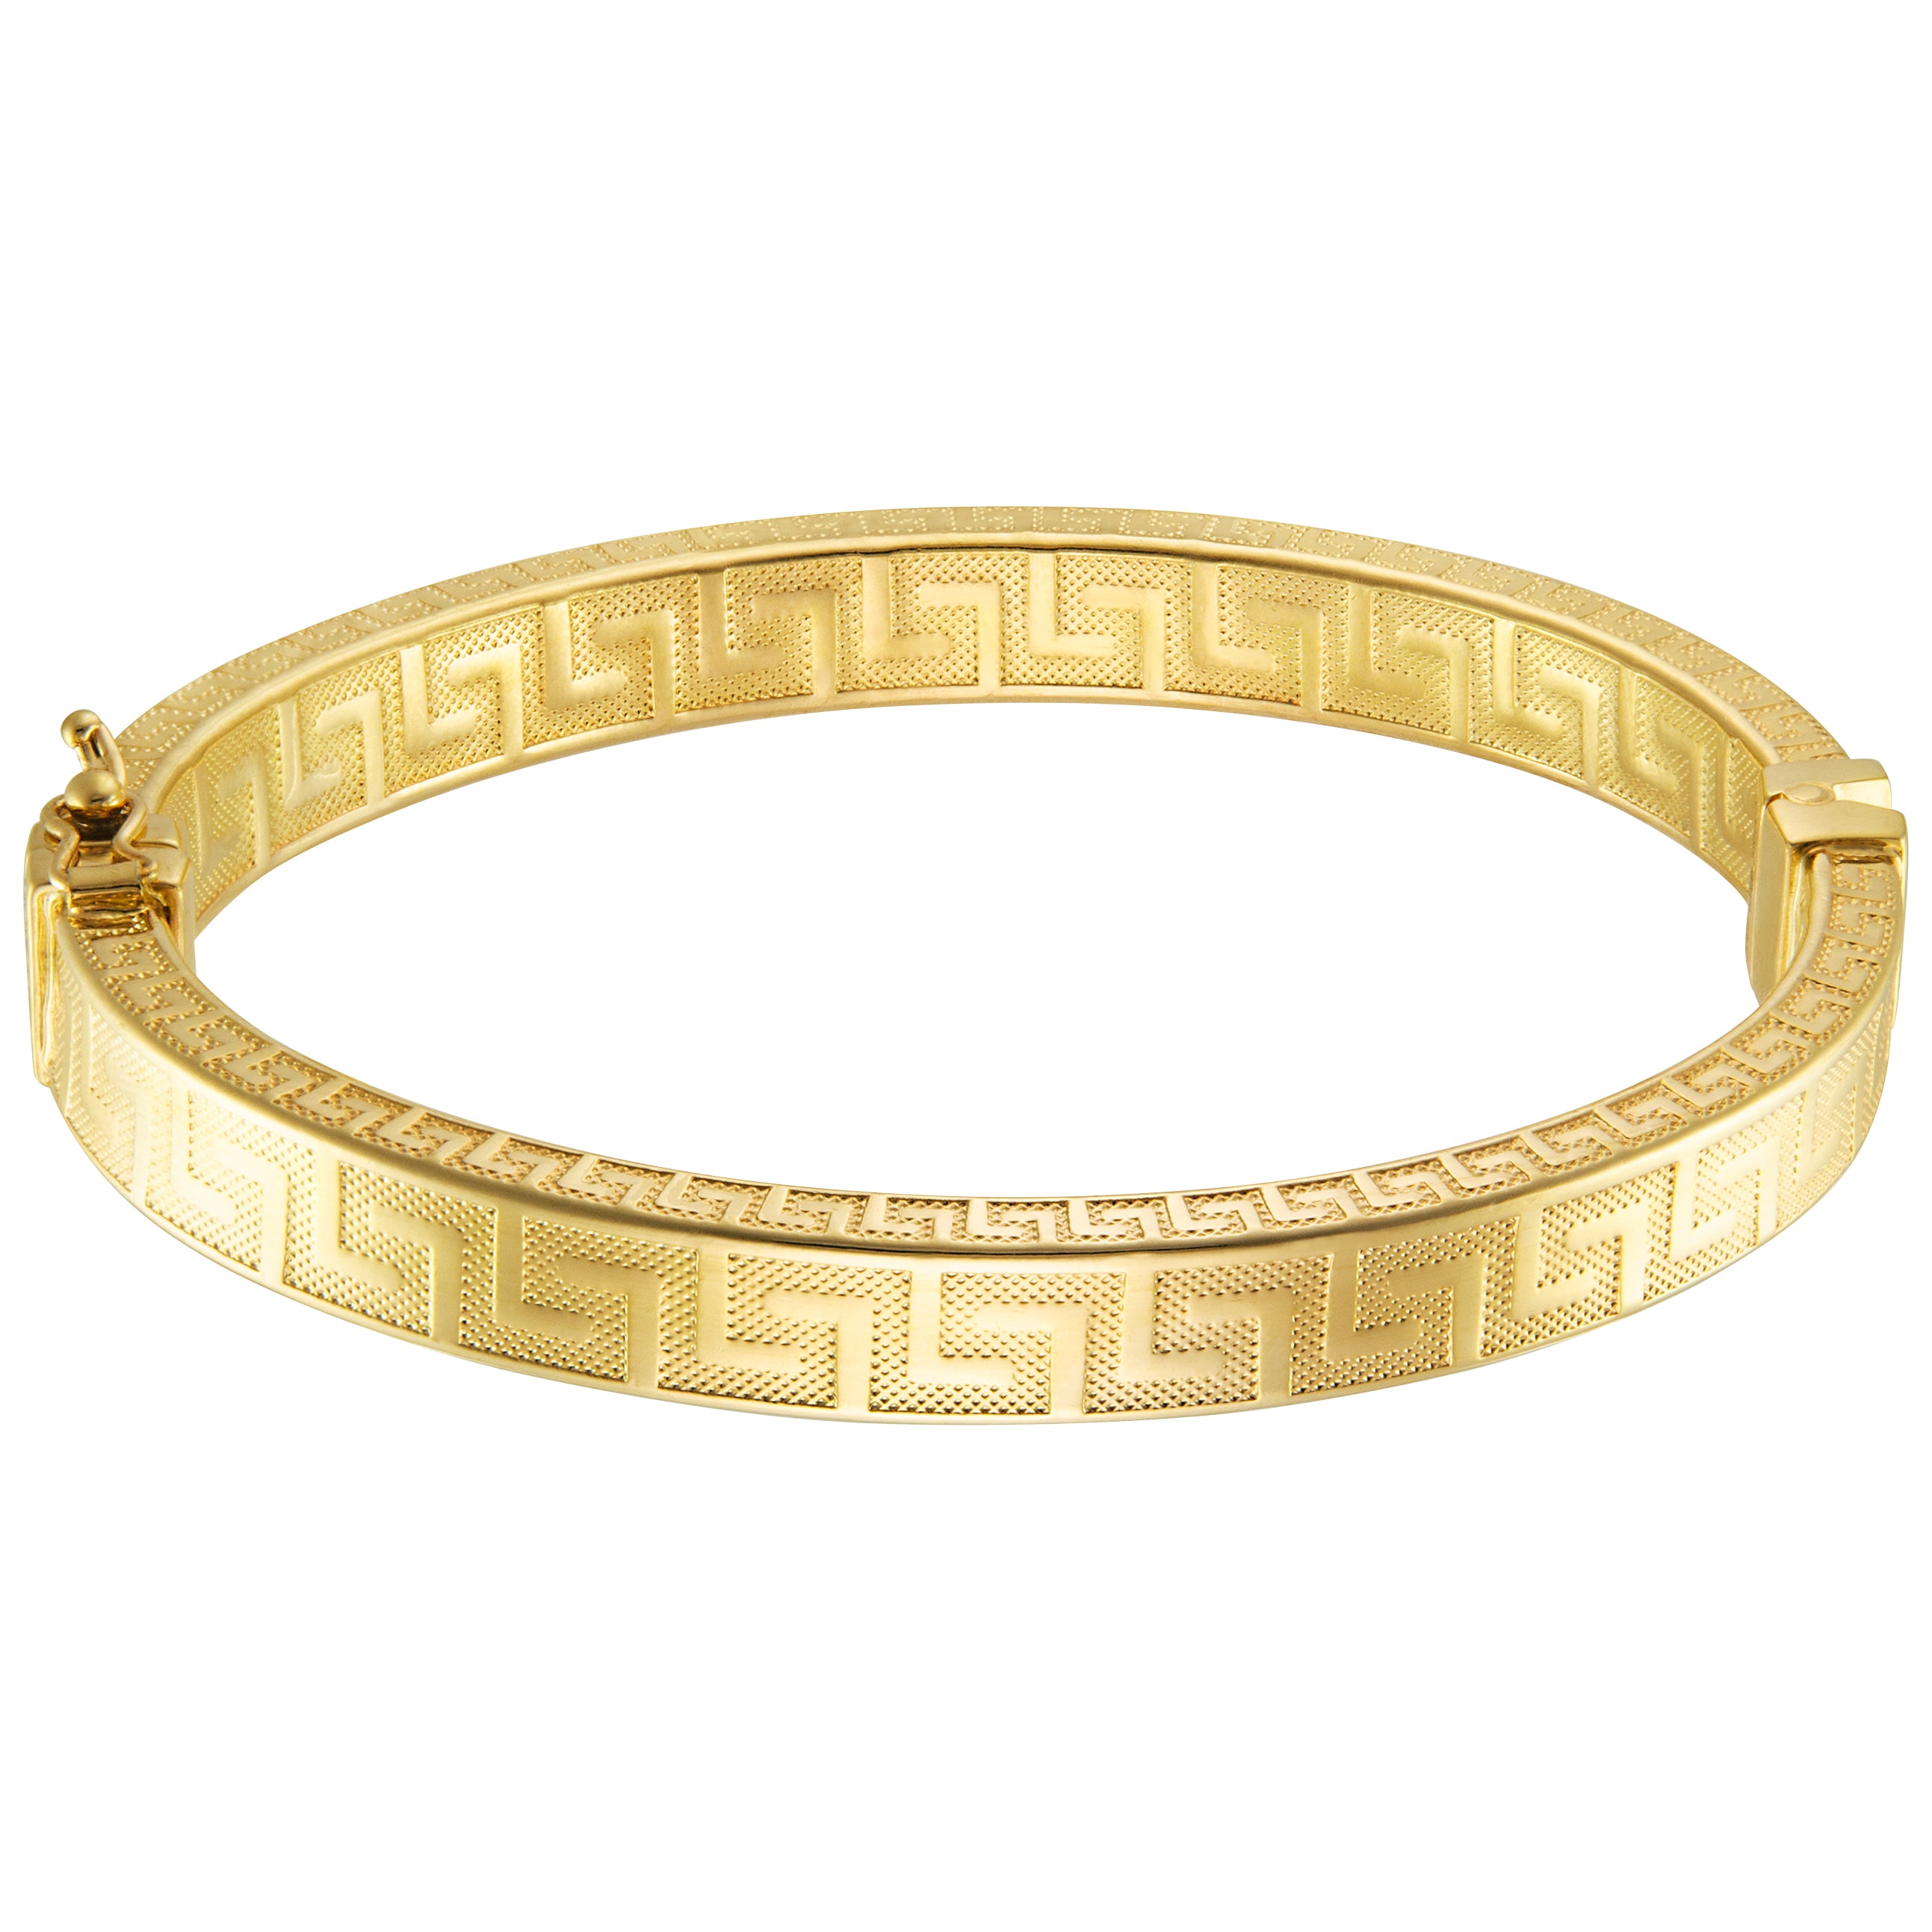 Bracelets | Buy Bracelets for Women Online | Bronzoro™ Jewellery